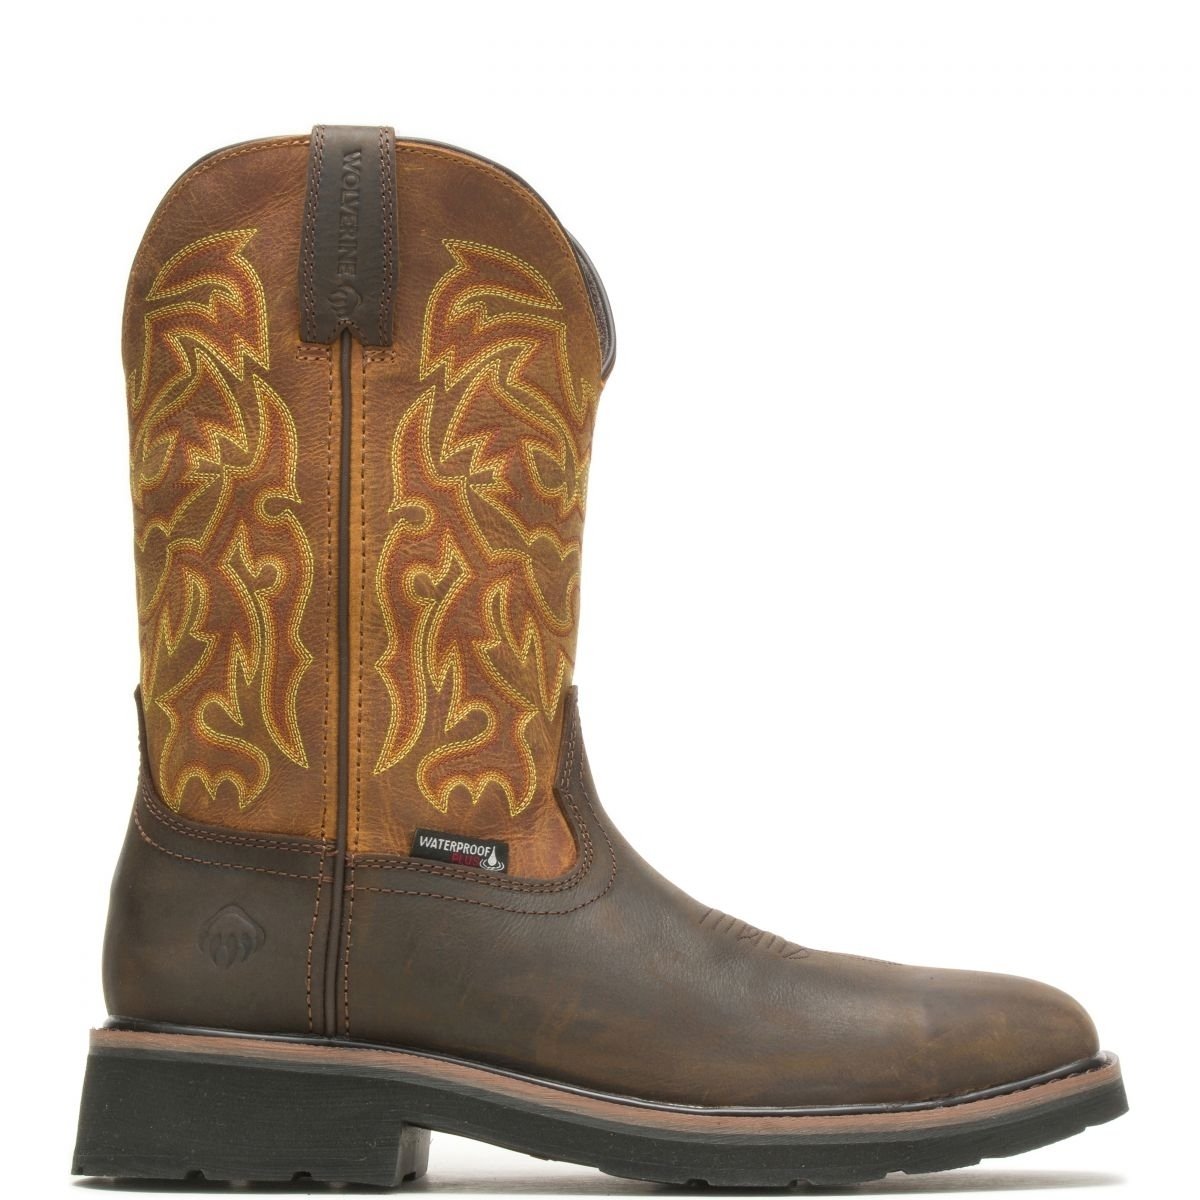 WOLVERINE Men's Rancher 10 Steel Toe Waterproof Work Boot Golden/Brown - W221029 GOLDEN/BROWN - GOLDEN/BROWN, 10.5-EW